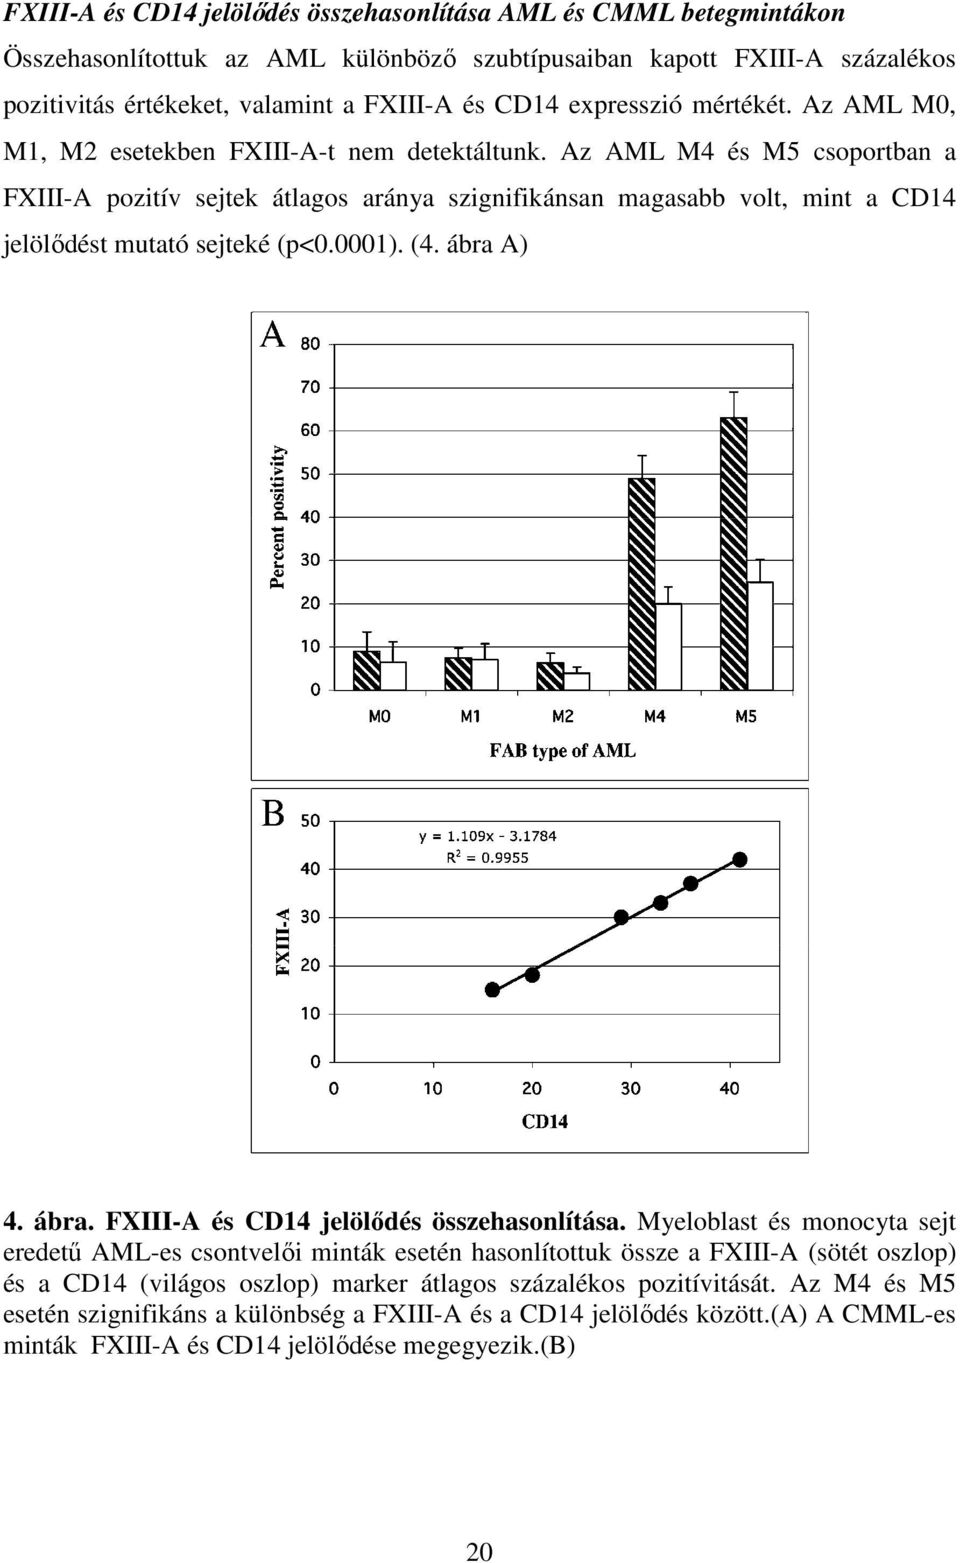 Az AML M4 és M5 csoportban a FXIII-A pozitív sejtek átlagos aránya szignifikánsan magasabb volt, mint a CD14 jelölődést mutató sejteké (p<0.0001). (4. ábra A) 4. ábra. FXIII-A és CD14 jelölődés összehasonlítása.